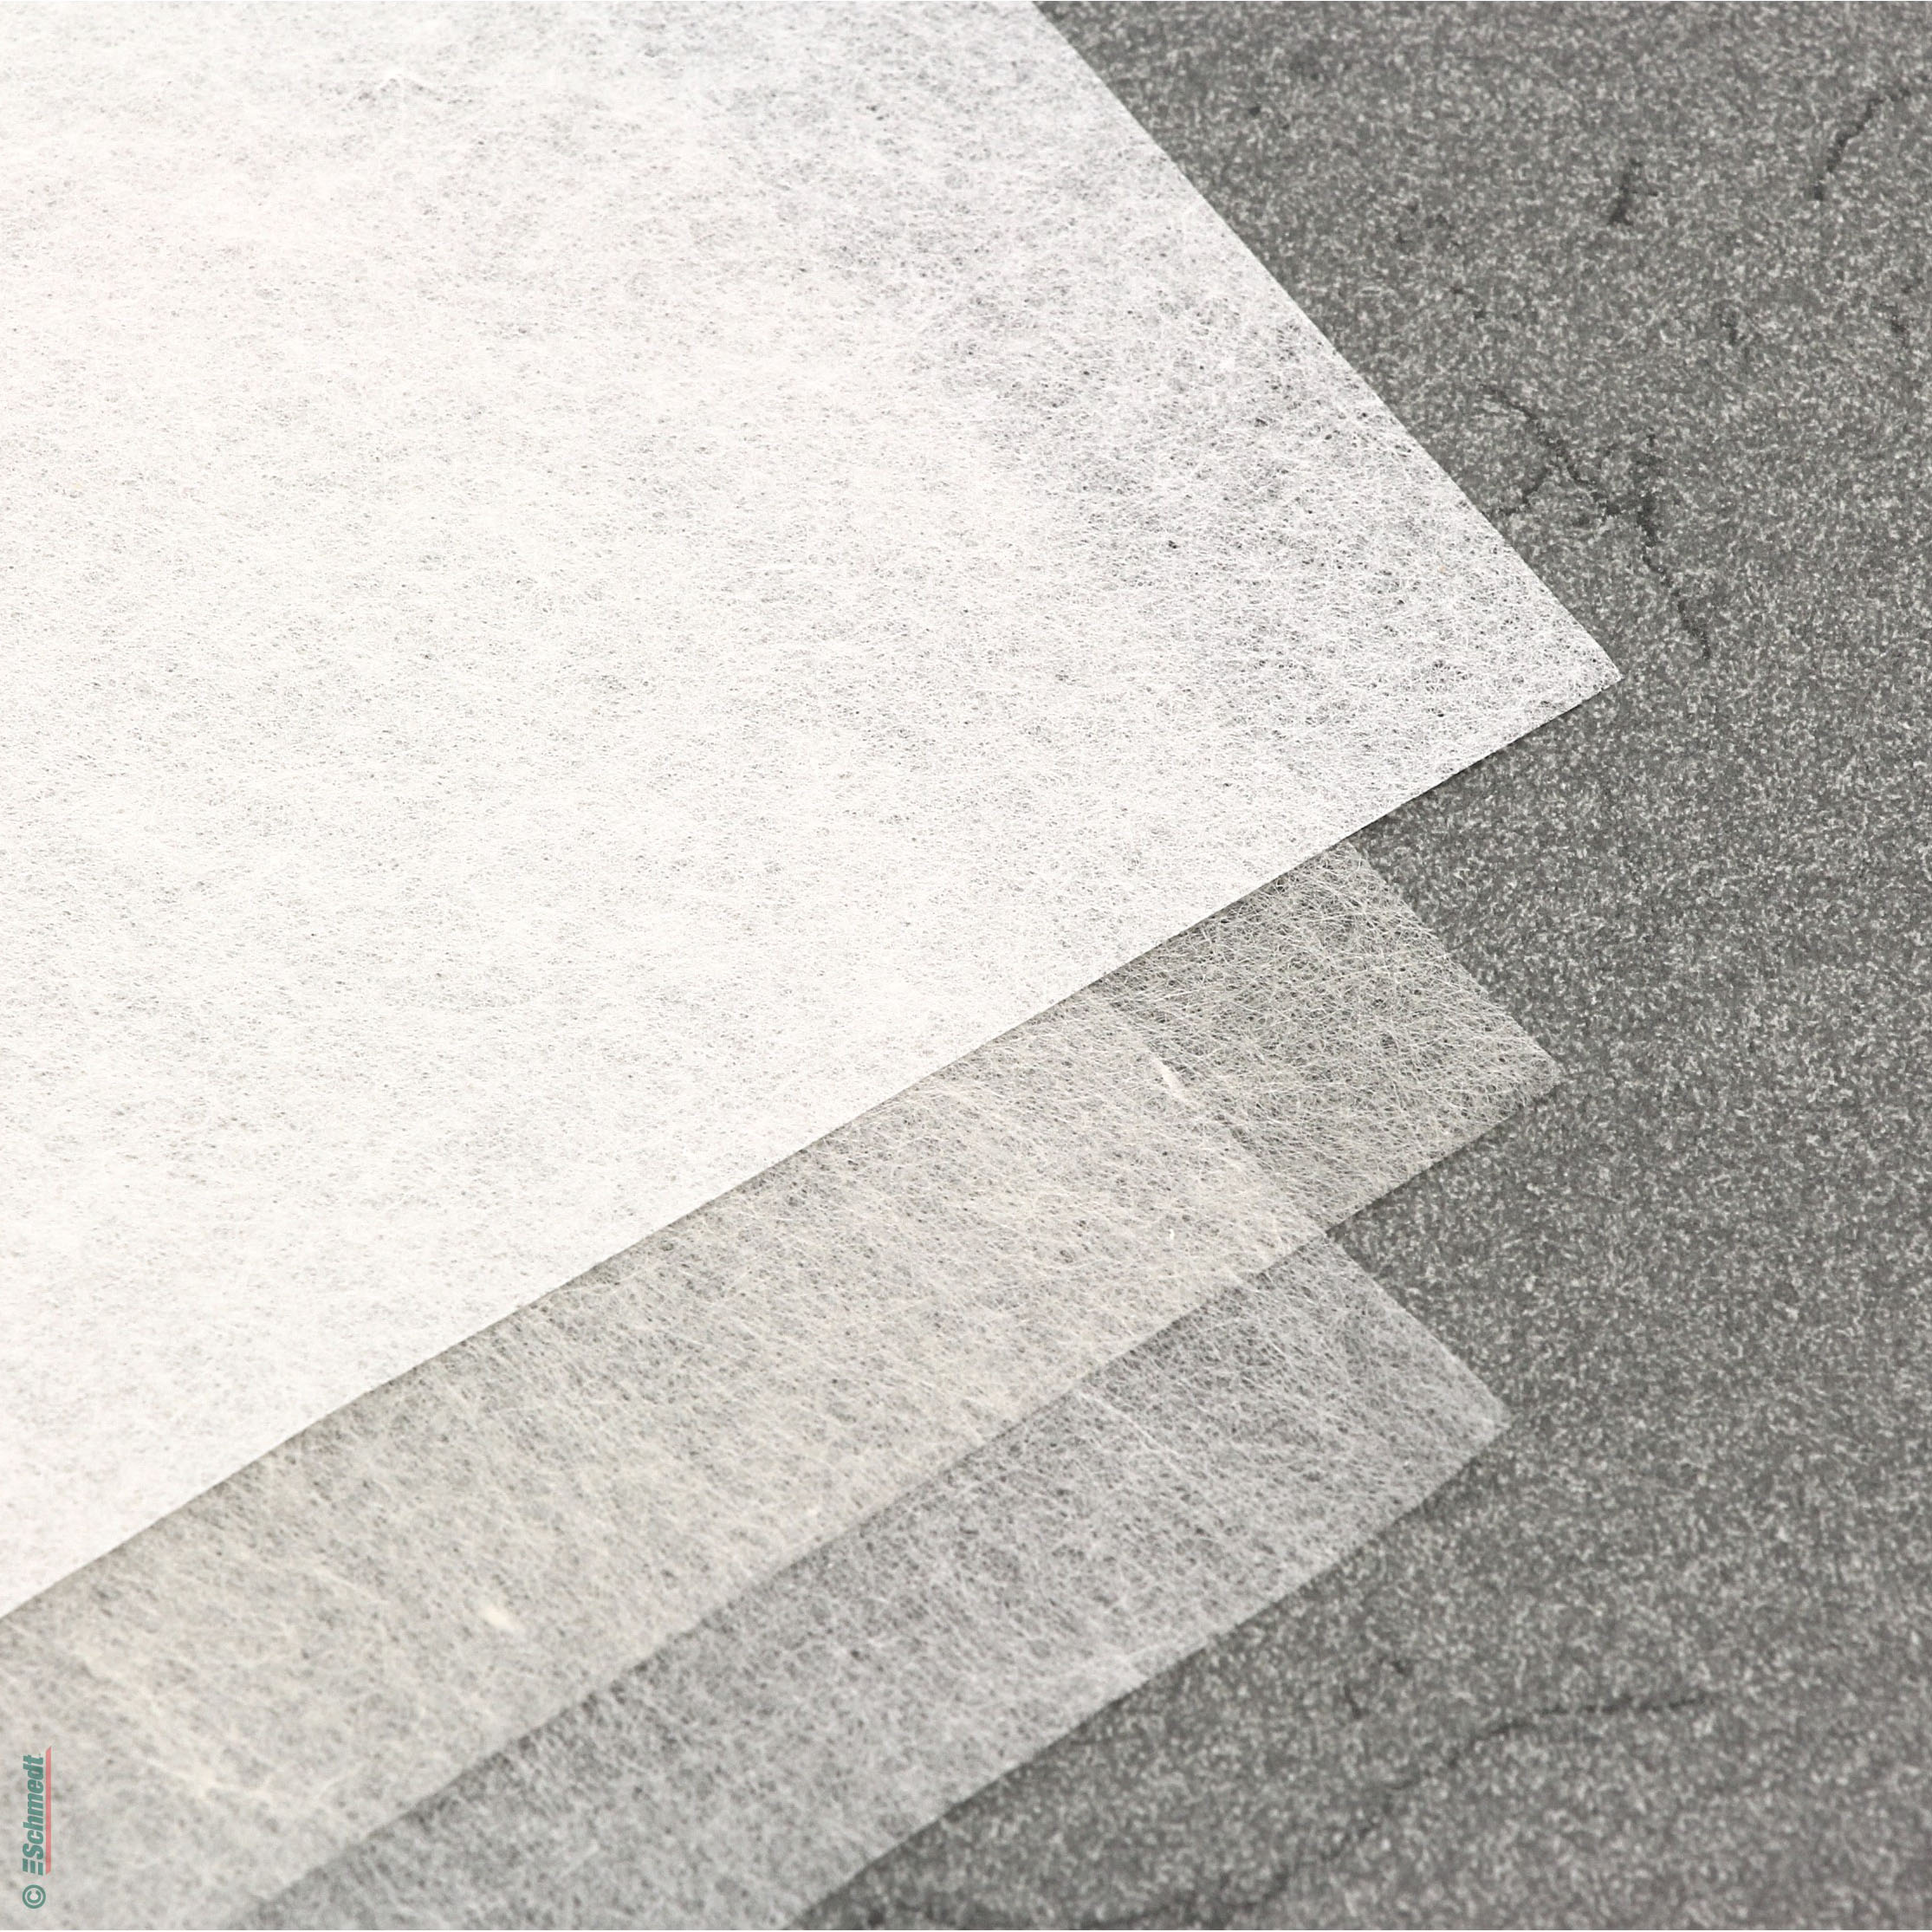 Japanpapier Kizuki-Kozo - Flächengewicht (in g/m²) 6 - Farbe creme - Restaurierung, Archivierung, Konservierung...